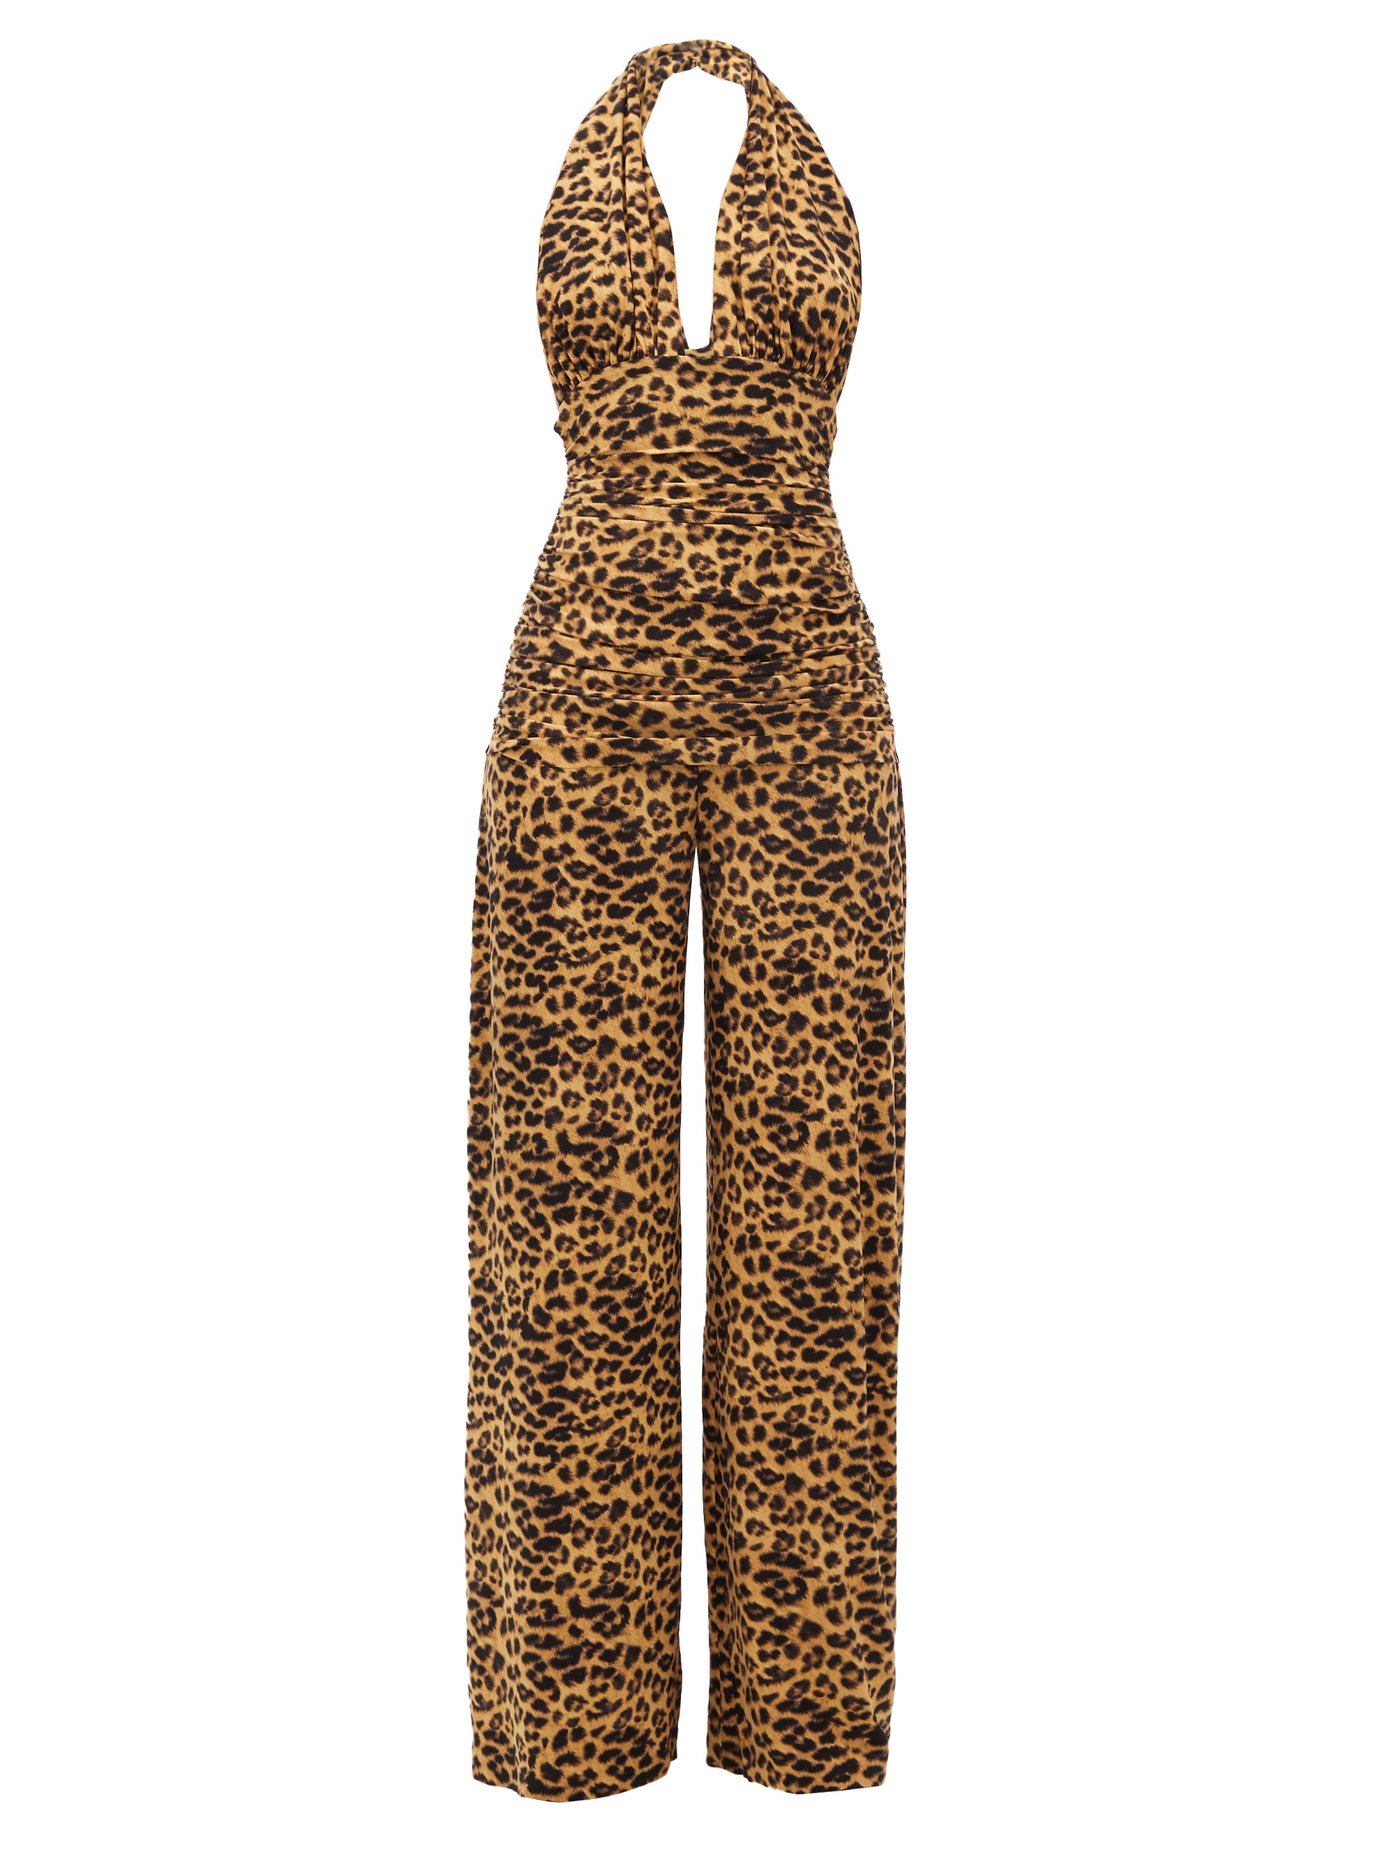 Ladies Plain Aztec Tie Dye Animal Leopard Print All In One Jumpsuit Size S M L 8